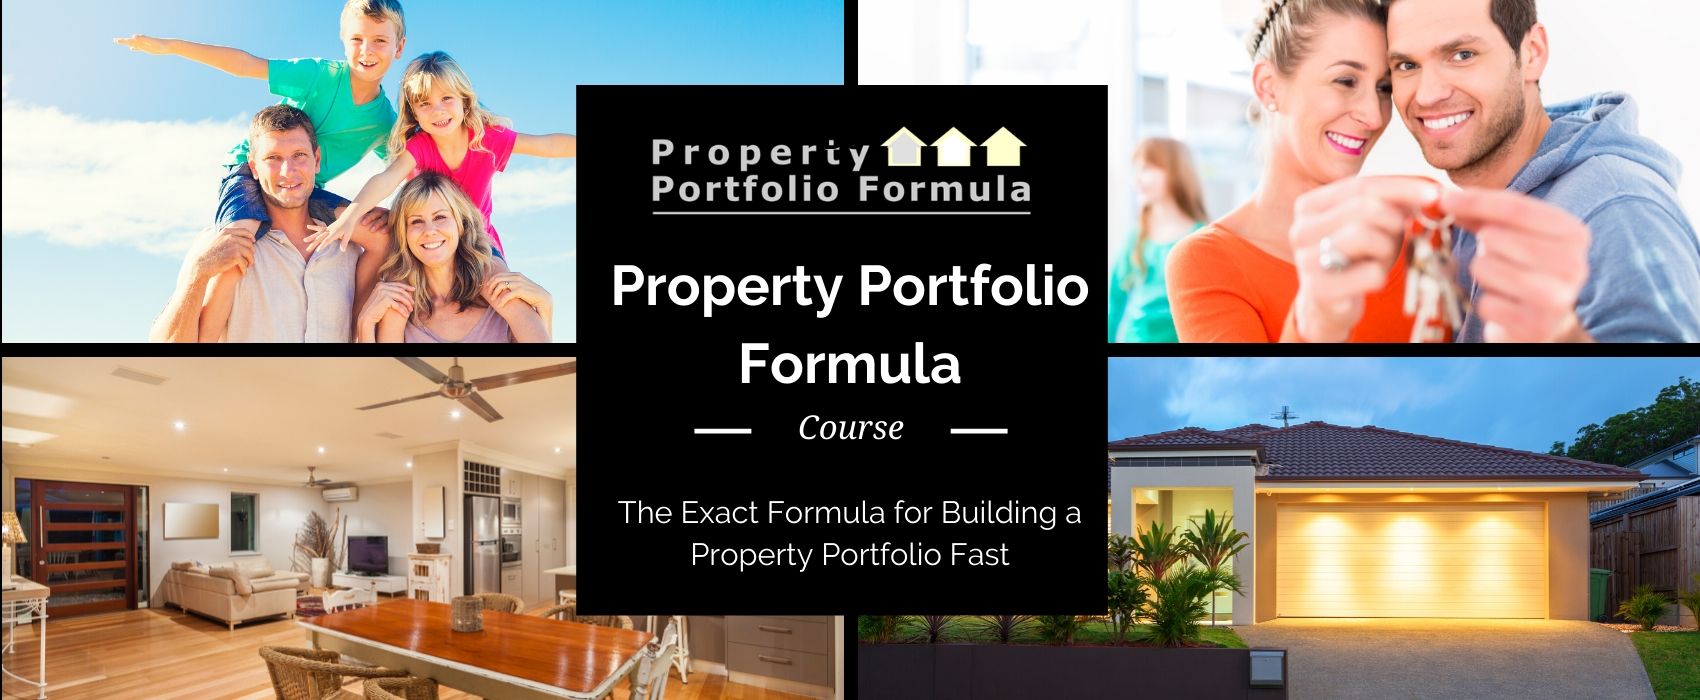 Property Portfolio Formula Featured Image